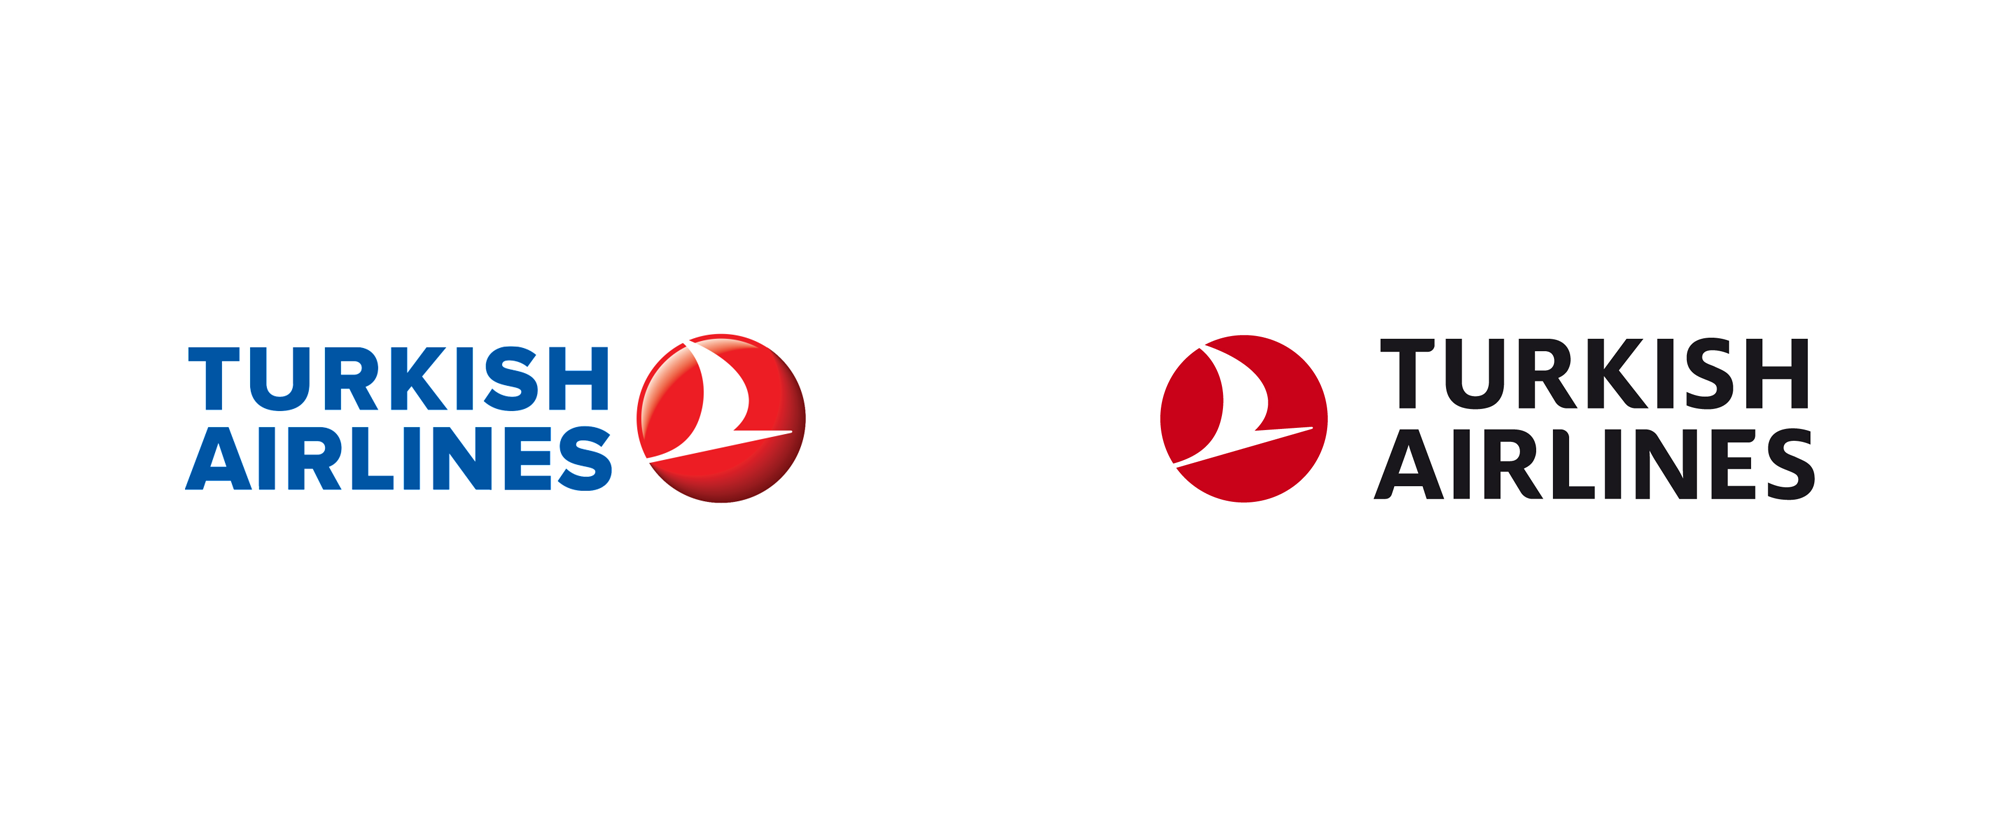 Turkish Airlines – Logos, B